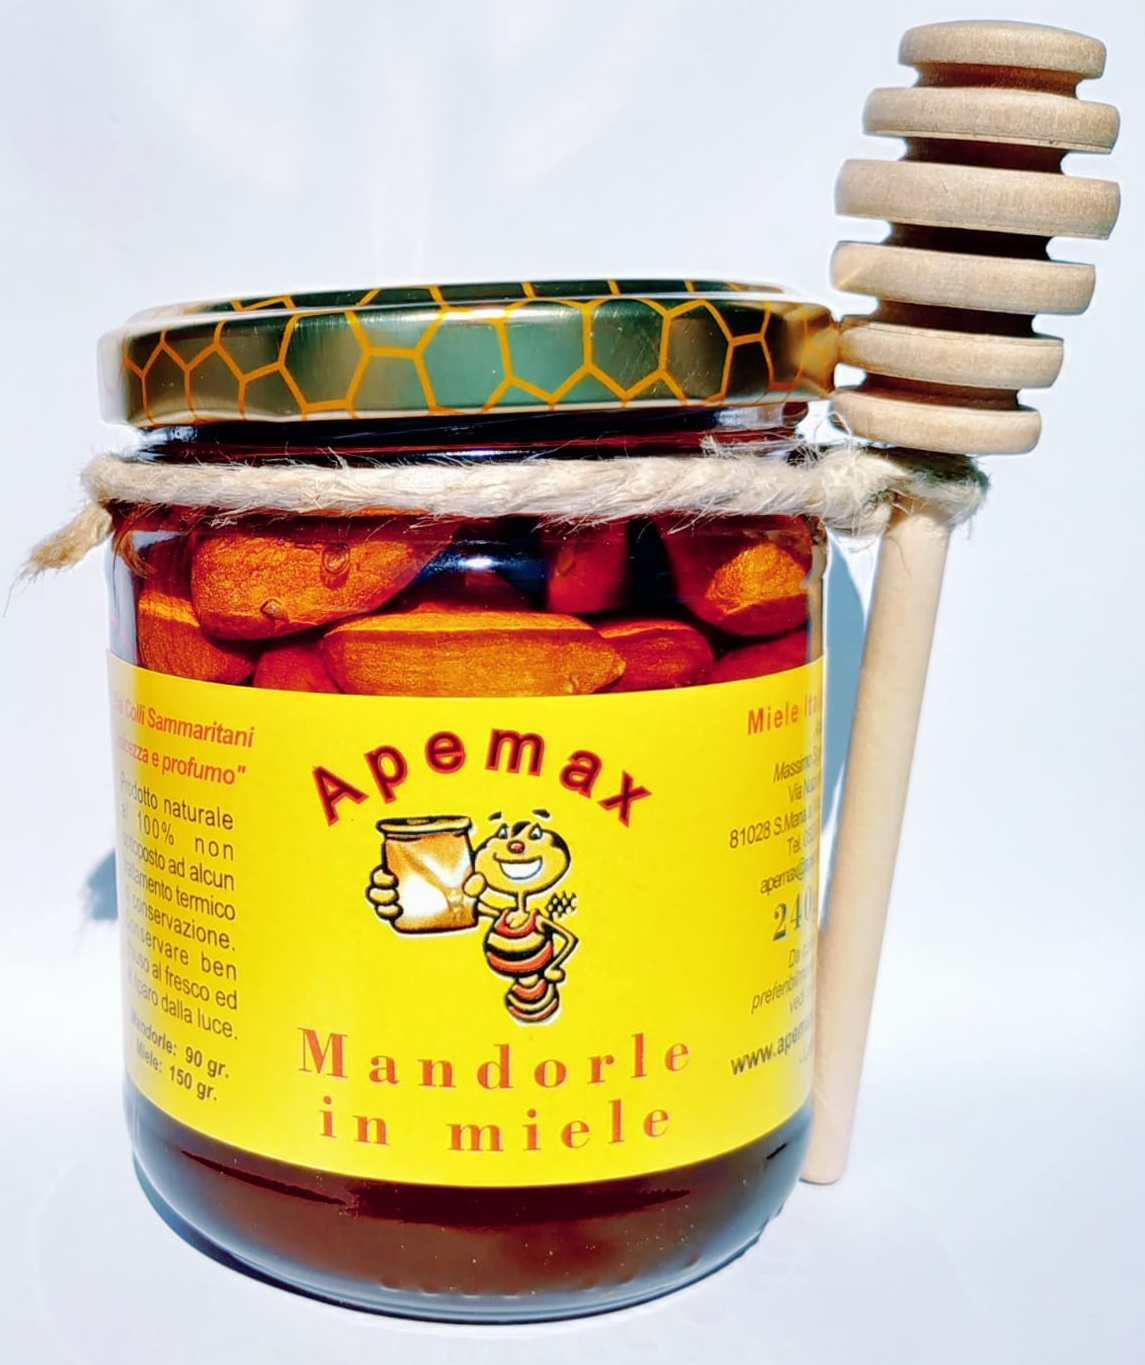 Mandorle in miele, Miele, Campania, Prodotti tipici, vendita miele online, cucina, cibo, apicoltura, api